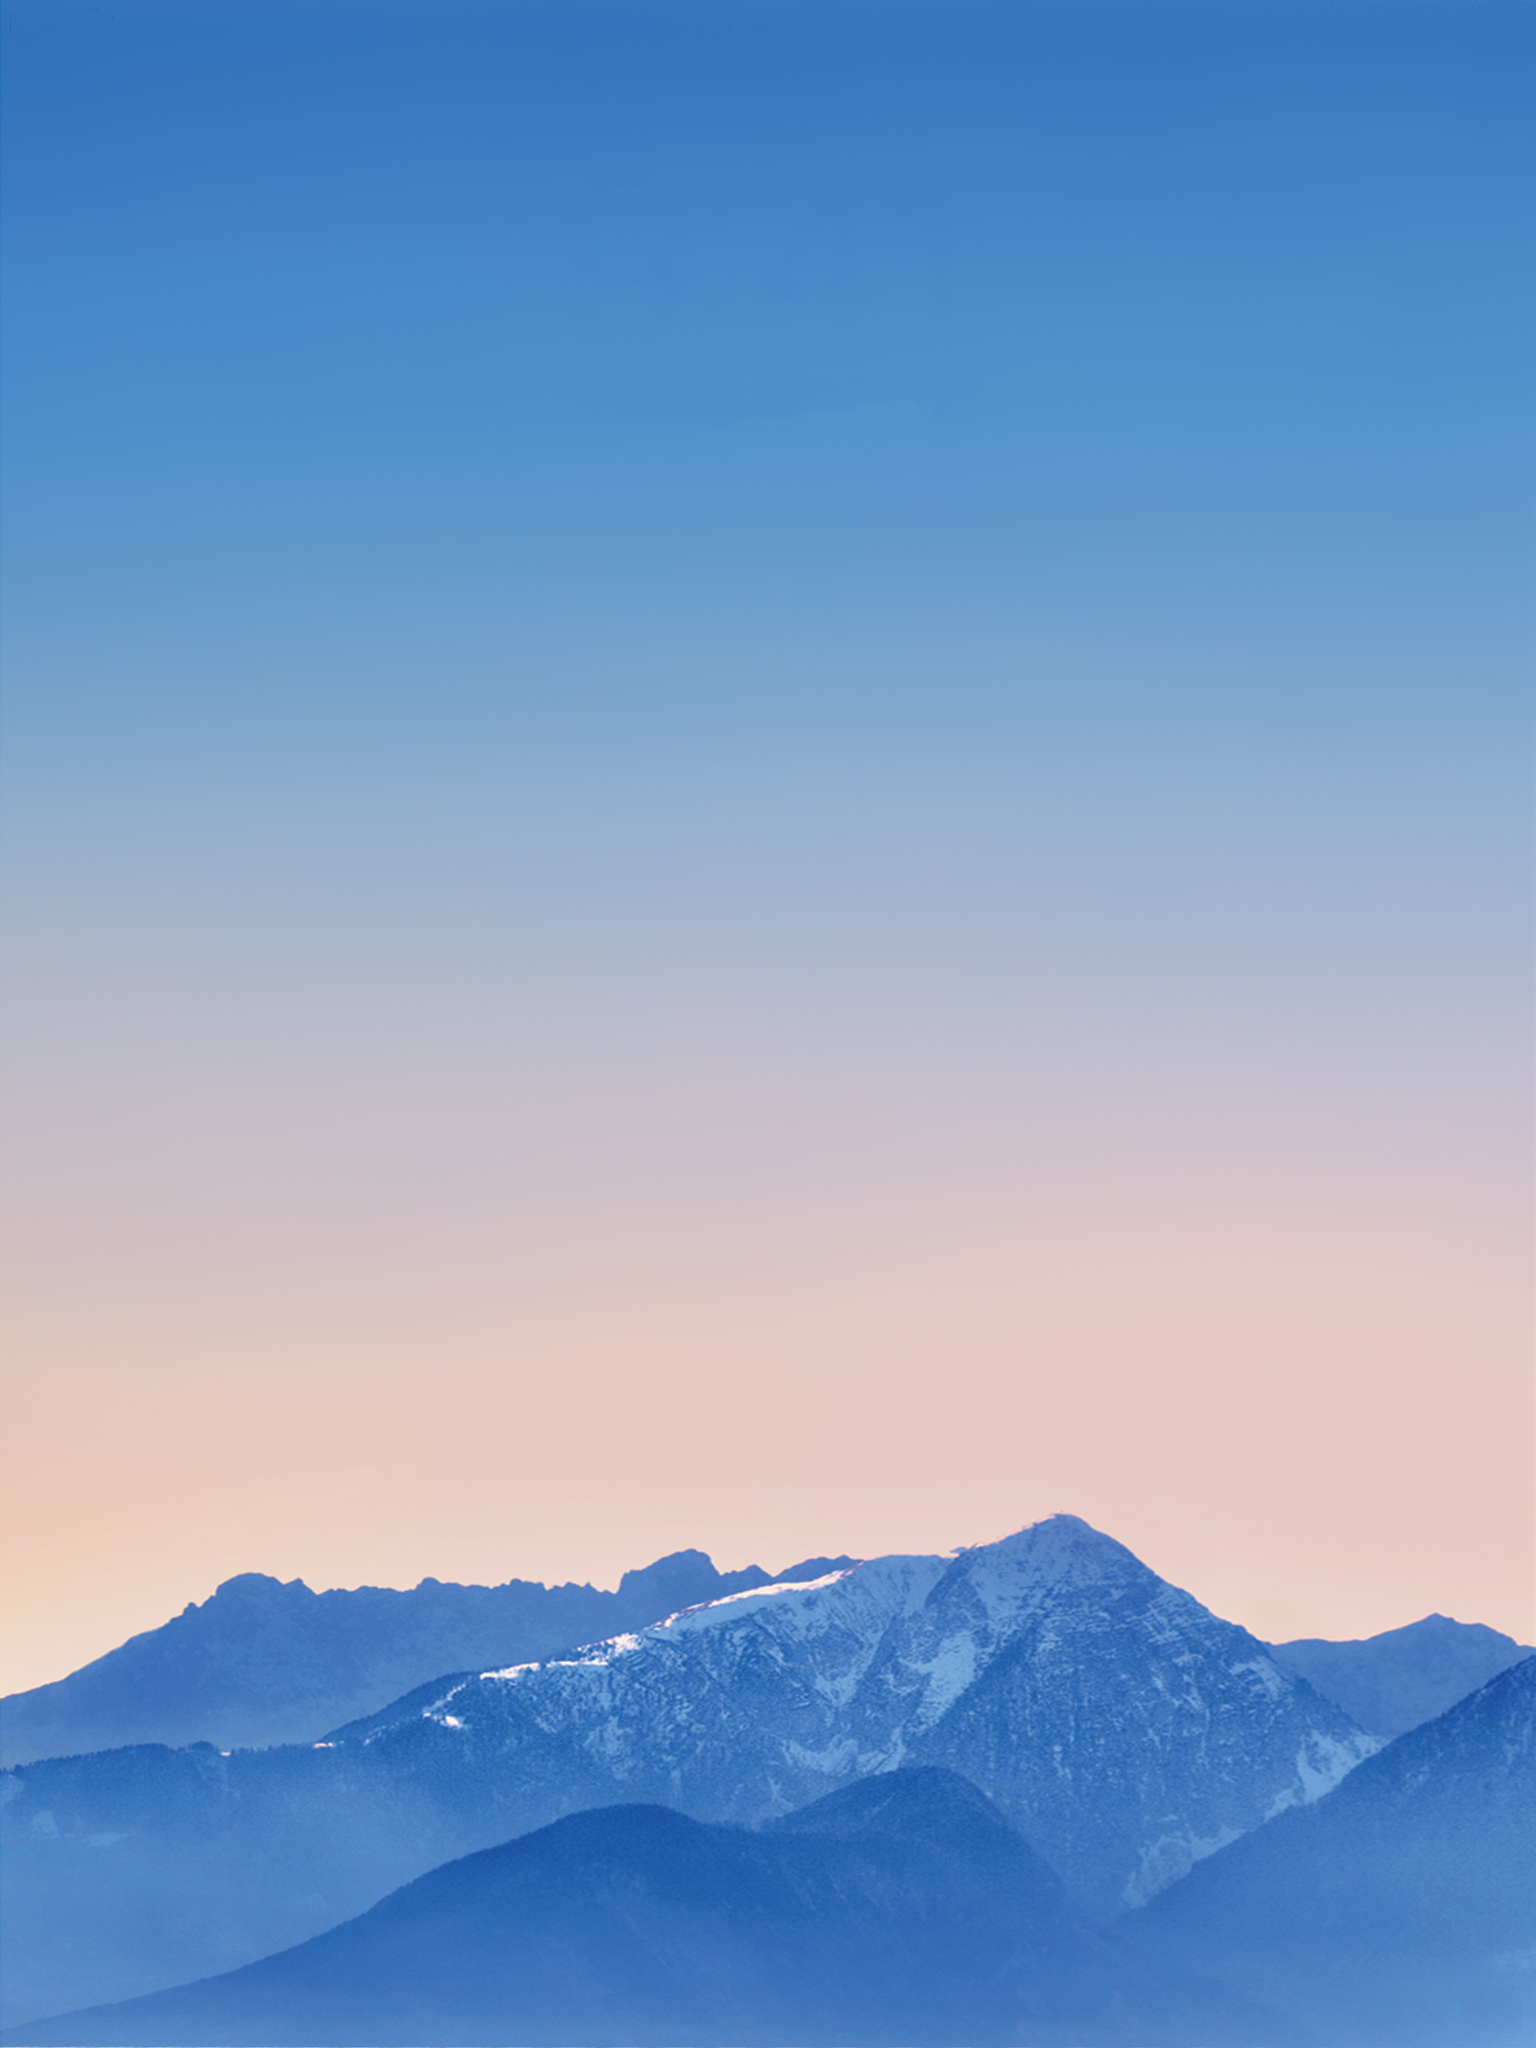 ipad mini retina wallpaper,sky,mountainous landforms,blue,mountain,mountain range